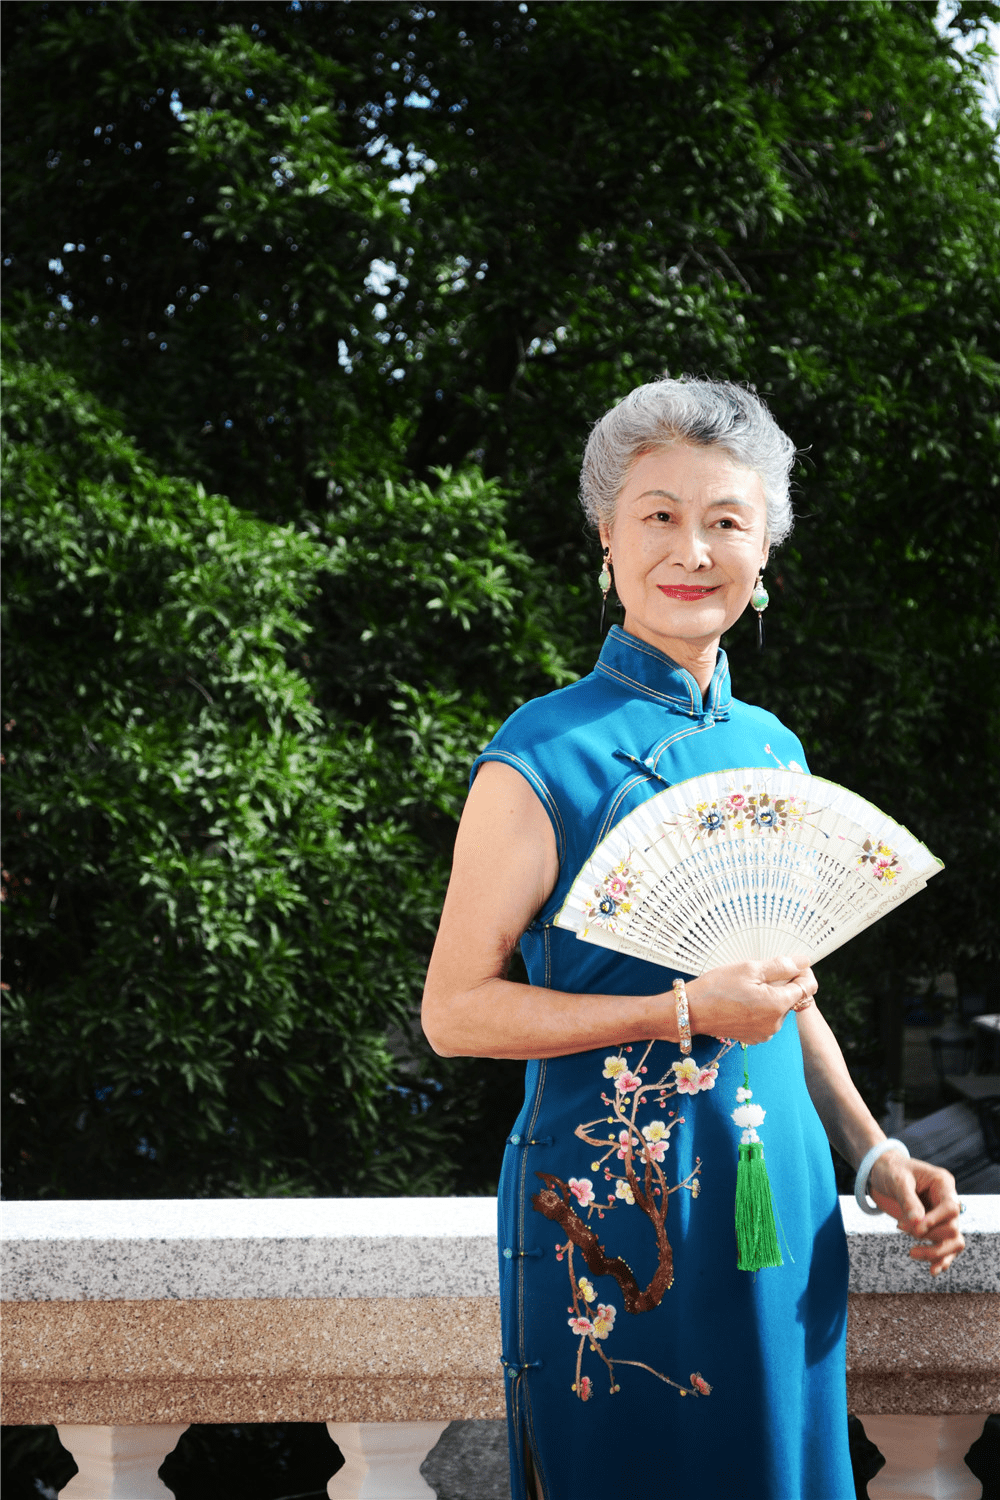 原创时尚与年龄无关!4位老太太美成一道风景,重新定义"中国奶奶"